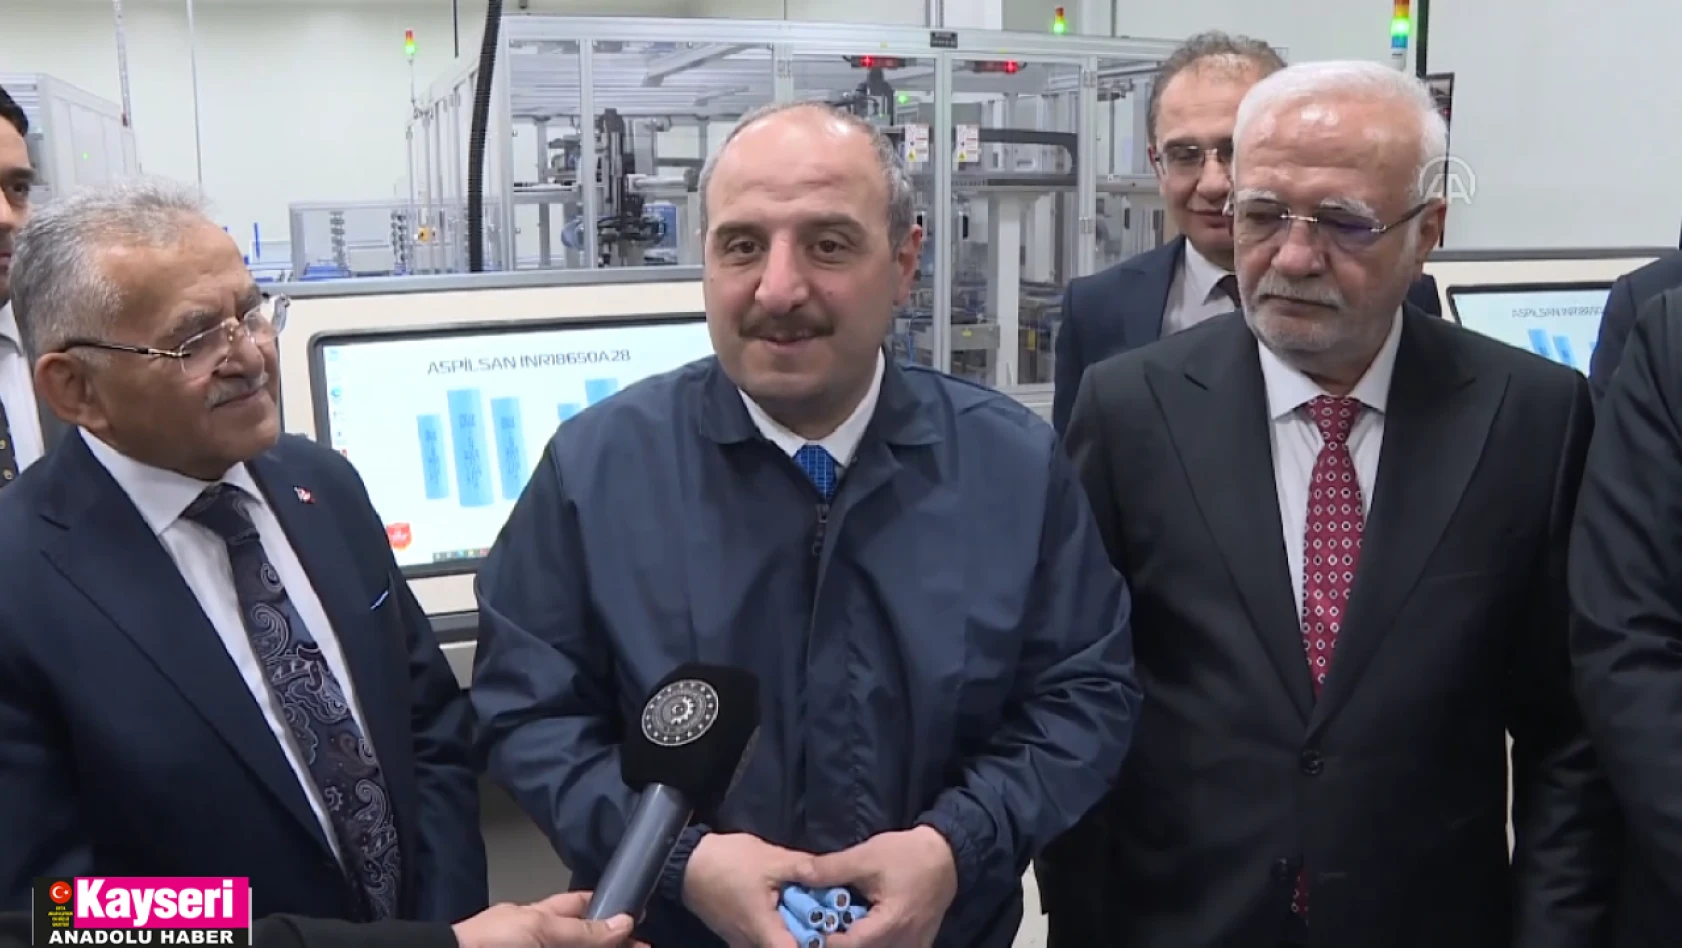 Bakan Varank, ASPİLSAN Enerji'nin lityum iyon pil üretim tesisini ziyaret etti